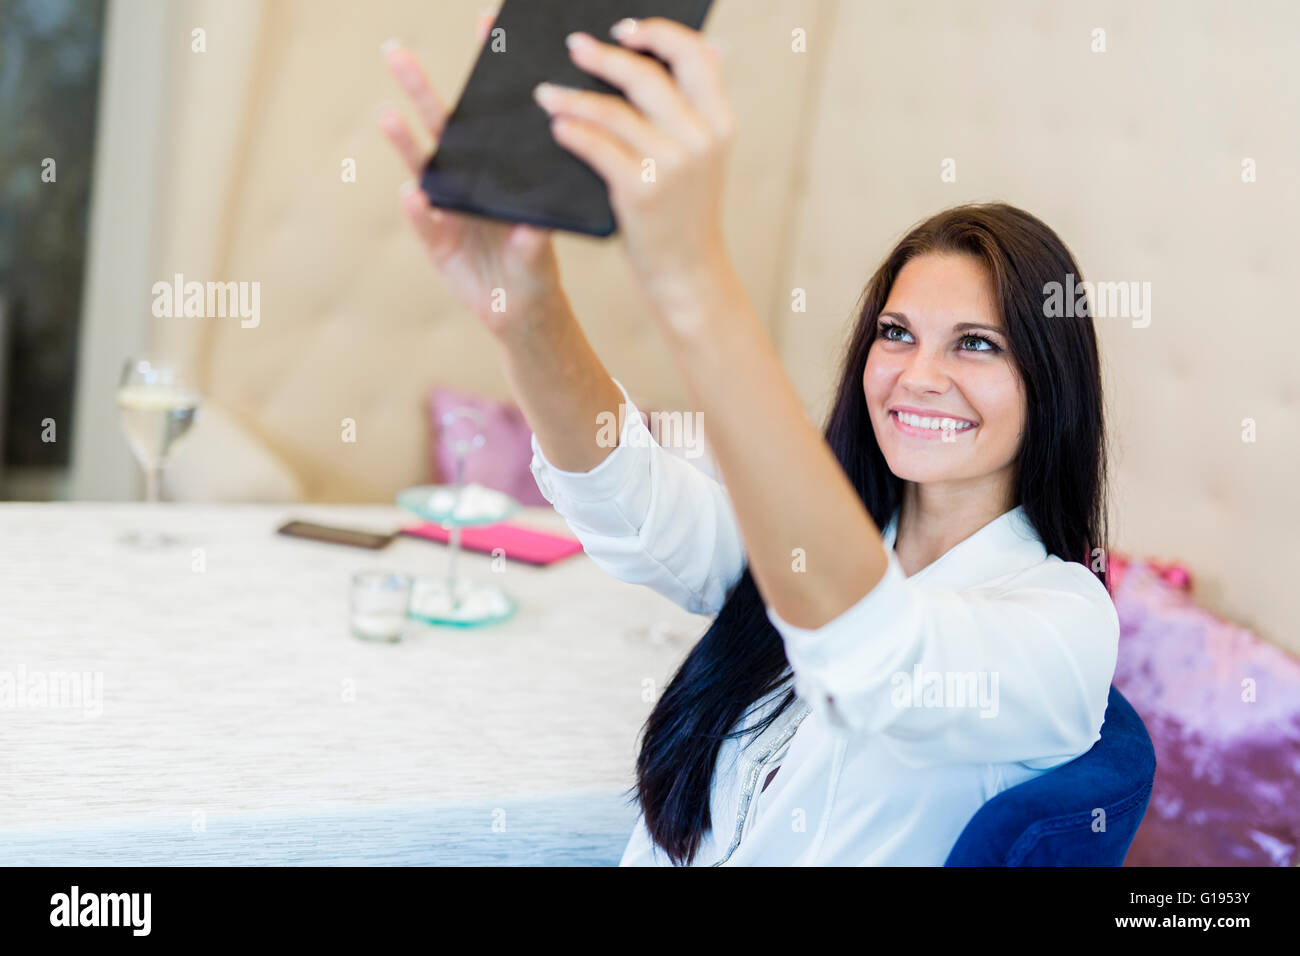 Schöne junge Frau, die unter ein Selfie von sich selbst in einem restaurant Stockfoto